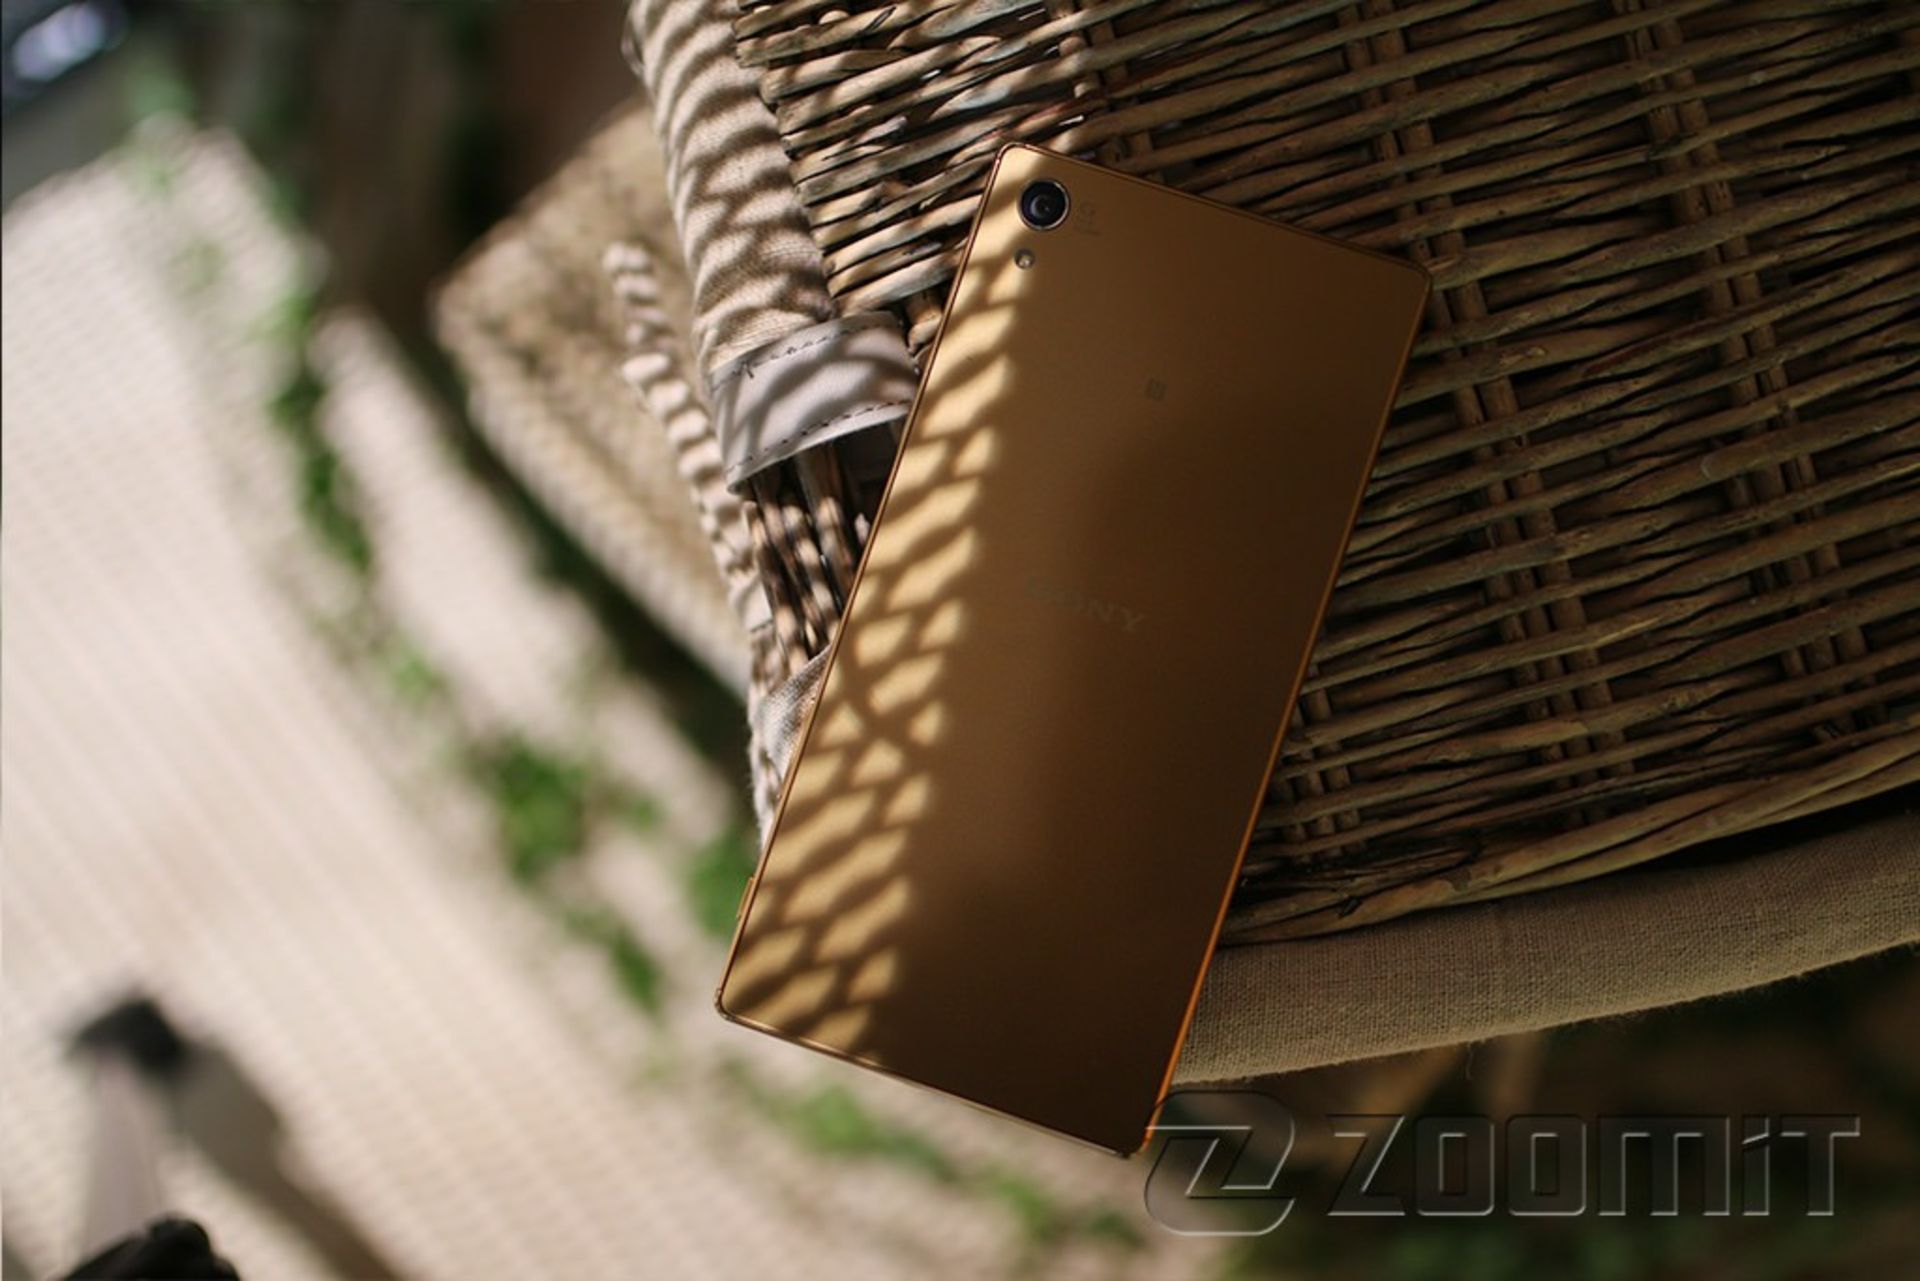 بررسی اکسپریا زد 5 پریمیوم سونی (Xperia Z5 Premium)